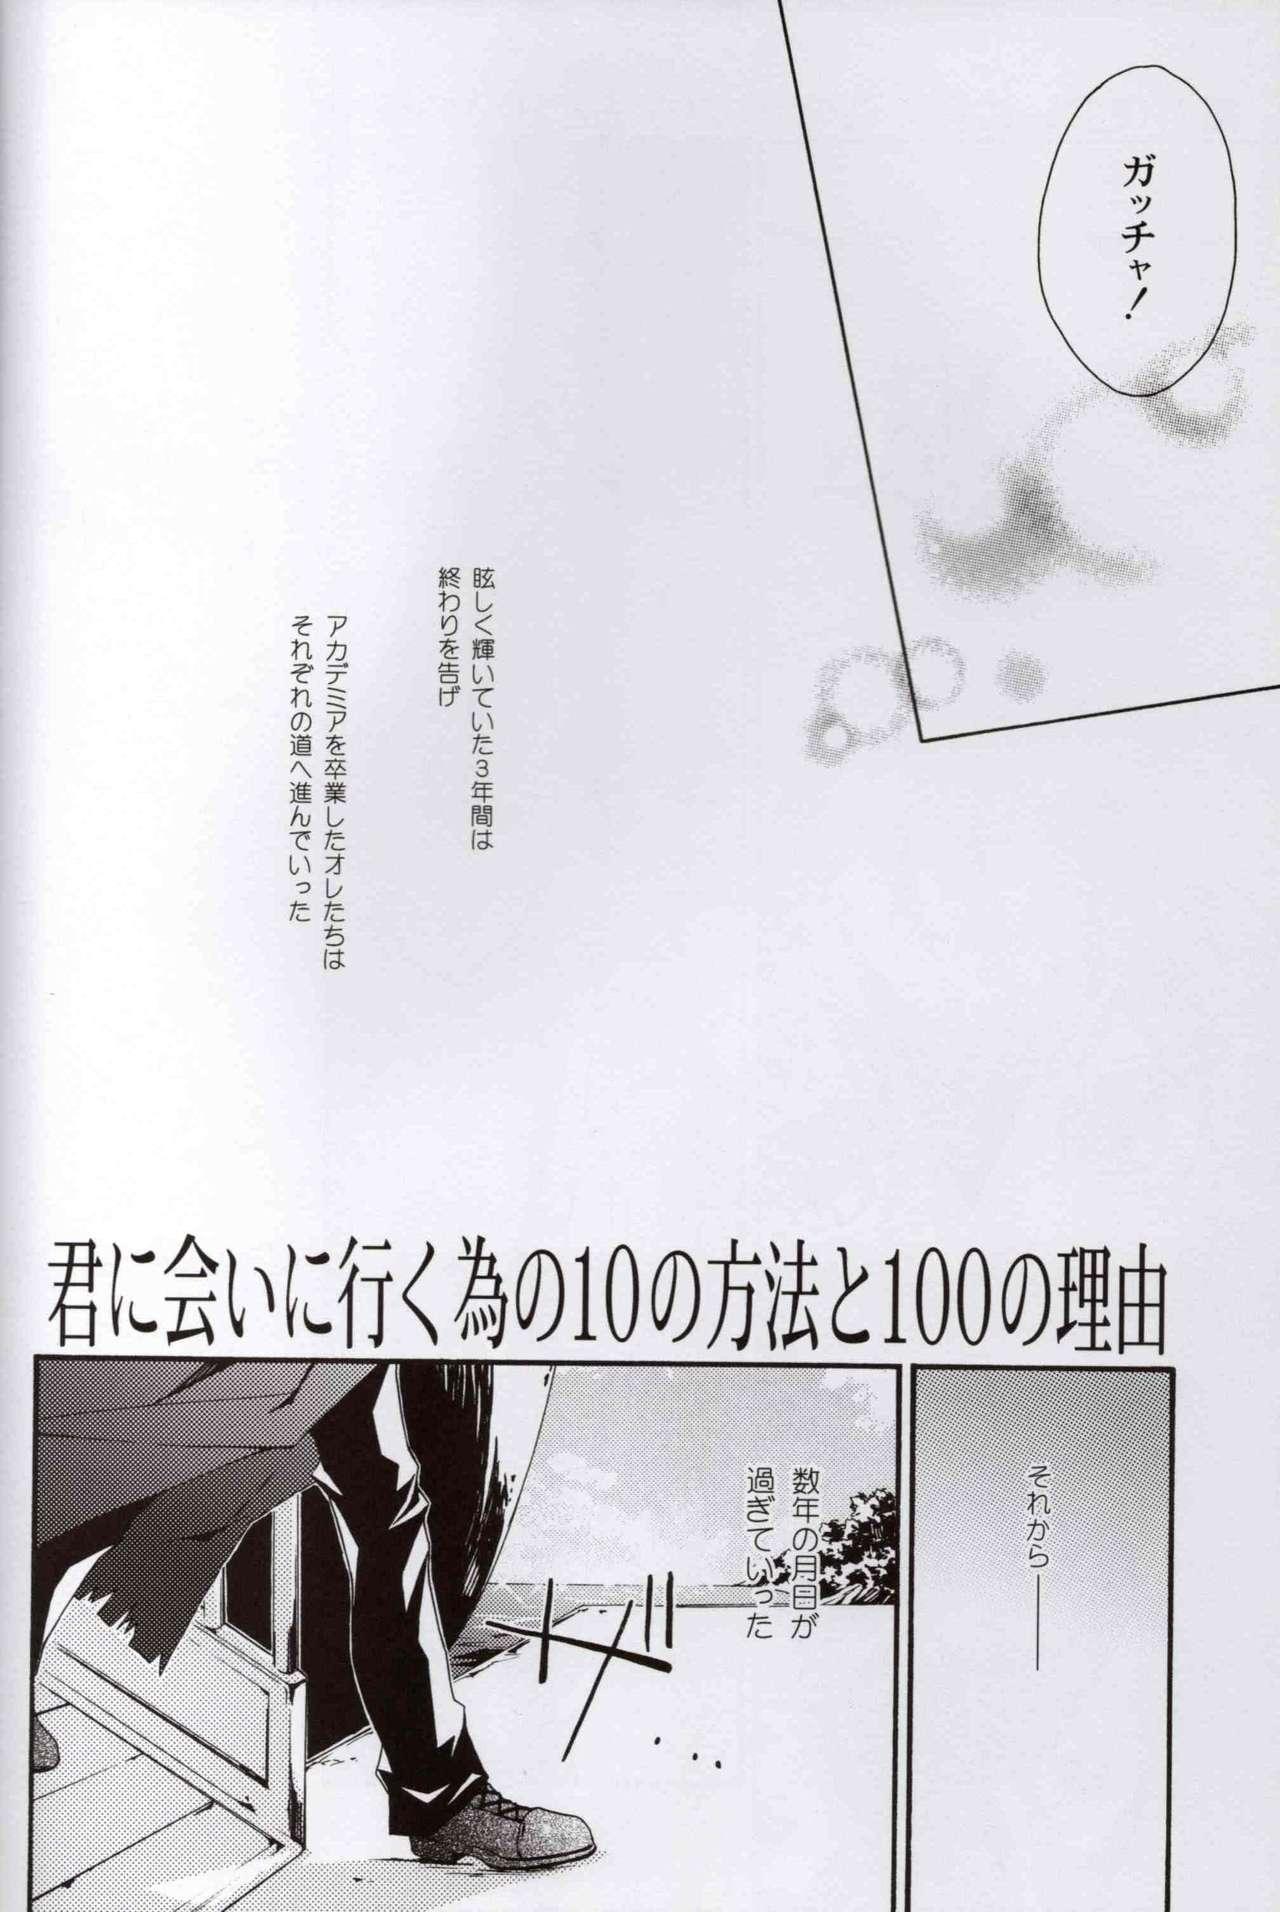 Cumload Kimi ni Ai ni Iku Tame no 10 no Houhou to 100 no Riyuu - Yu gi oh gx Scene - Page 7